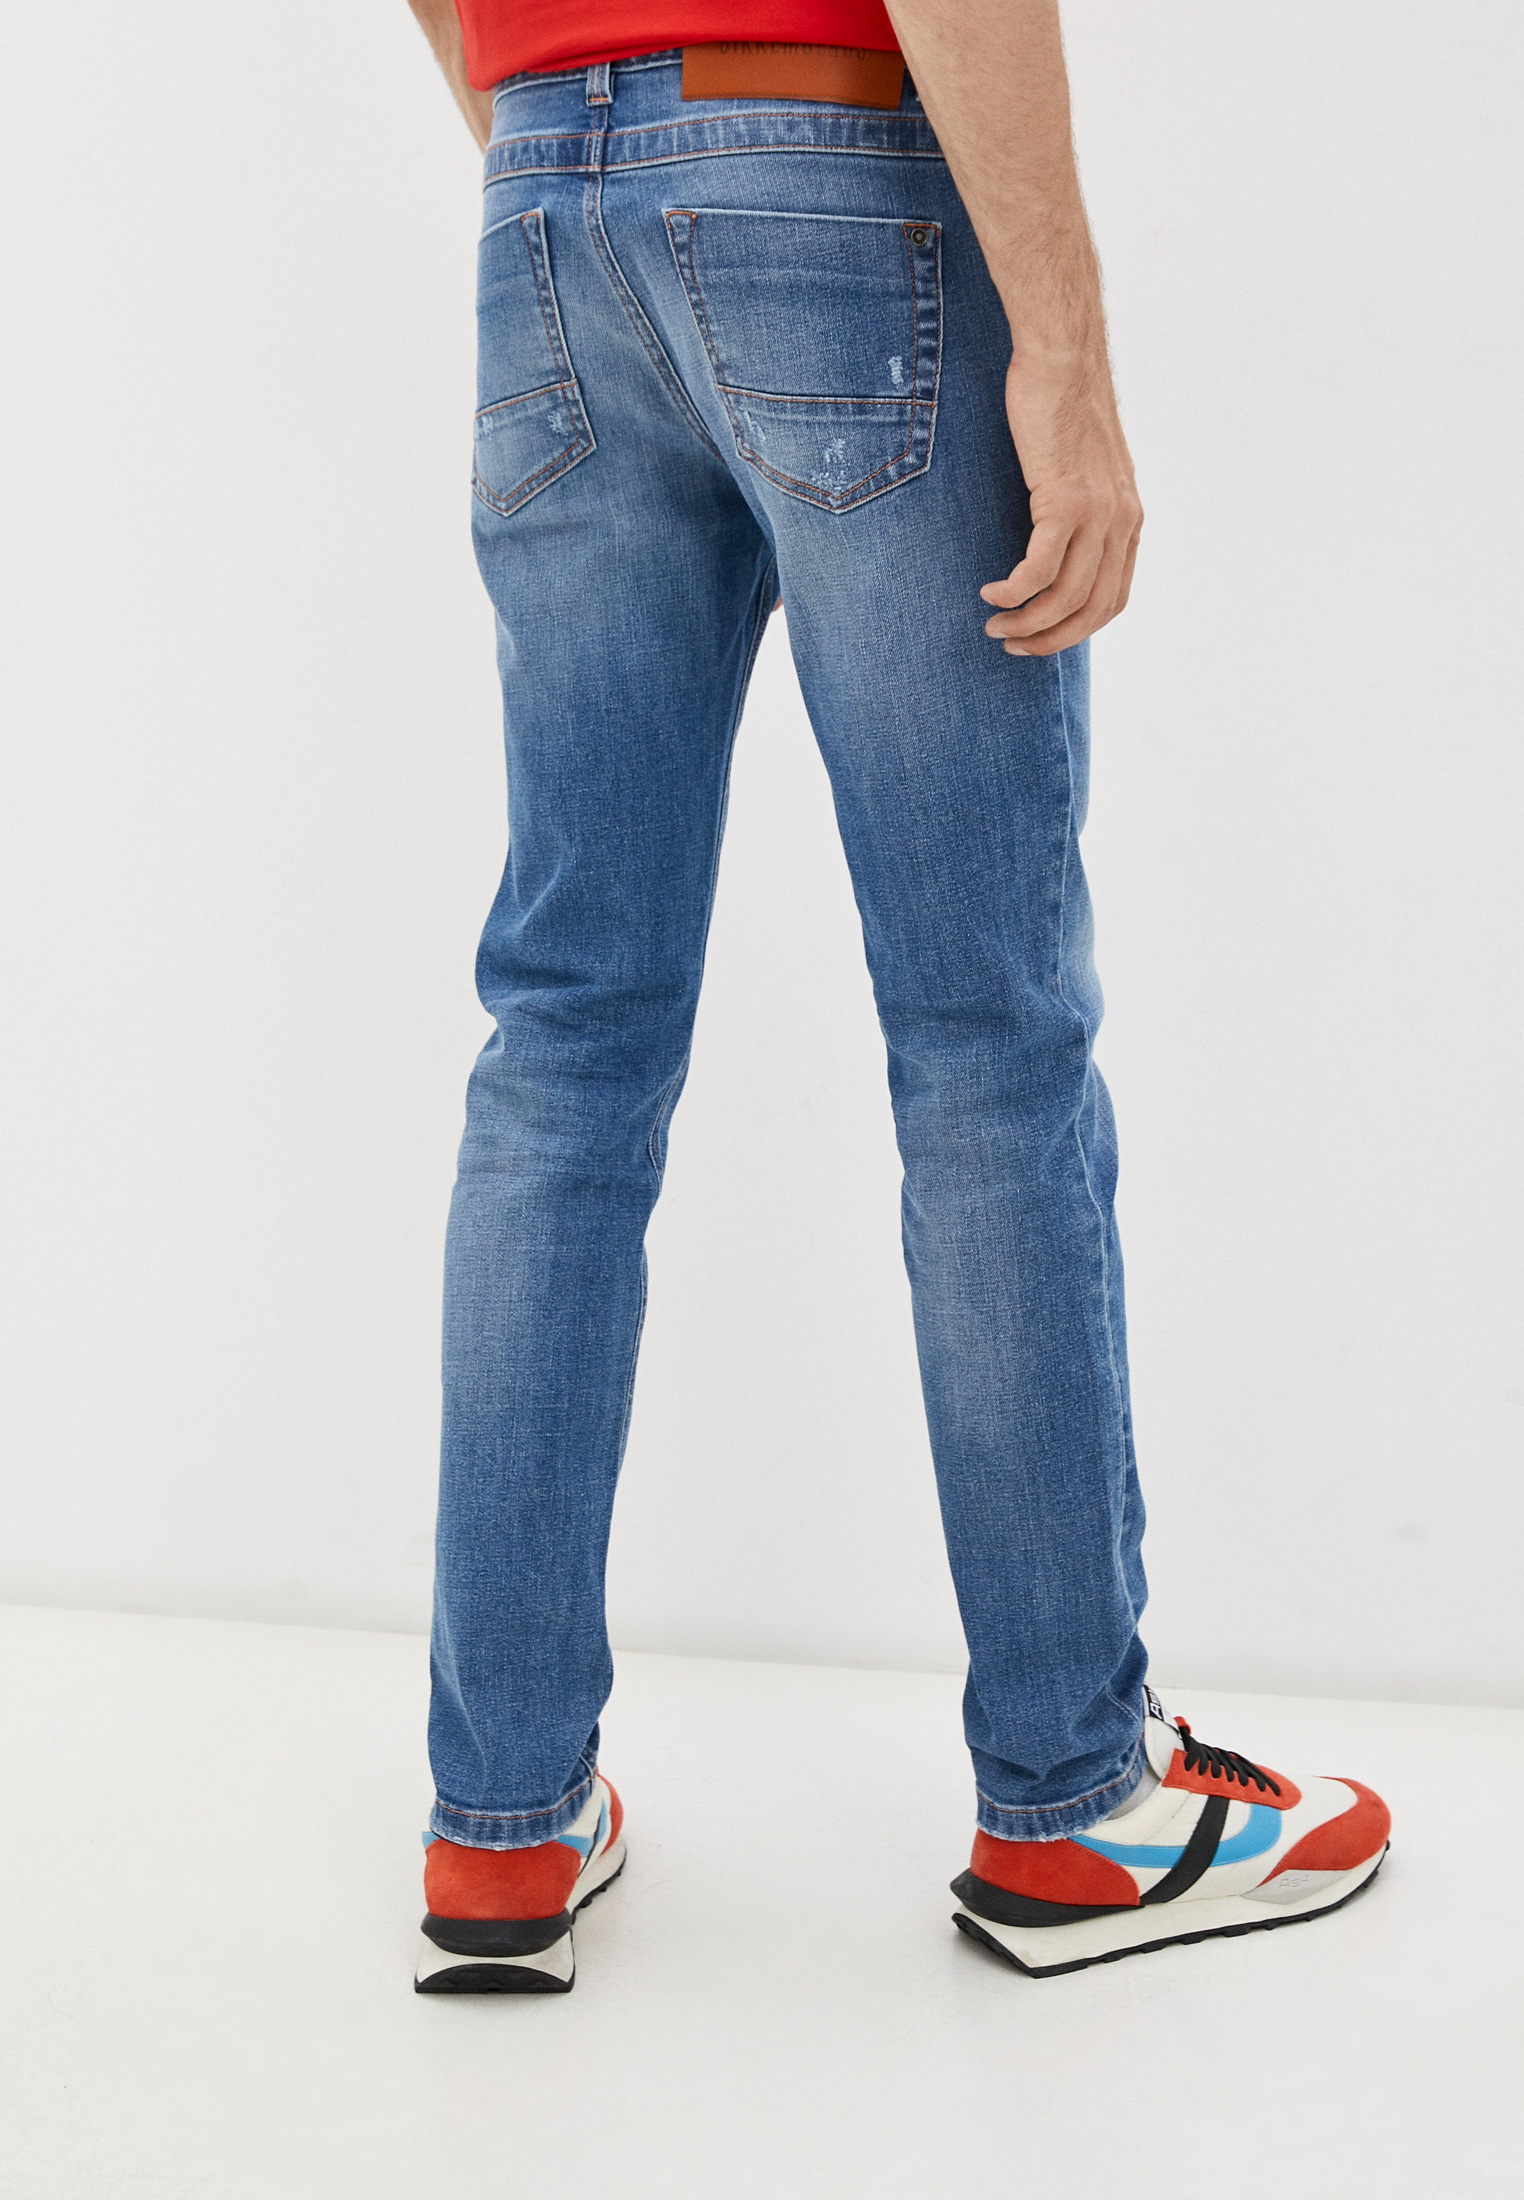 Мужские зауженные джинсы Bikkembergs (Биккембергс) C Q 101 03 S 3393: изображение 4